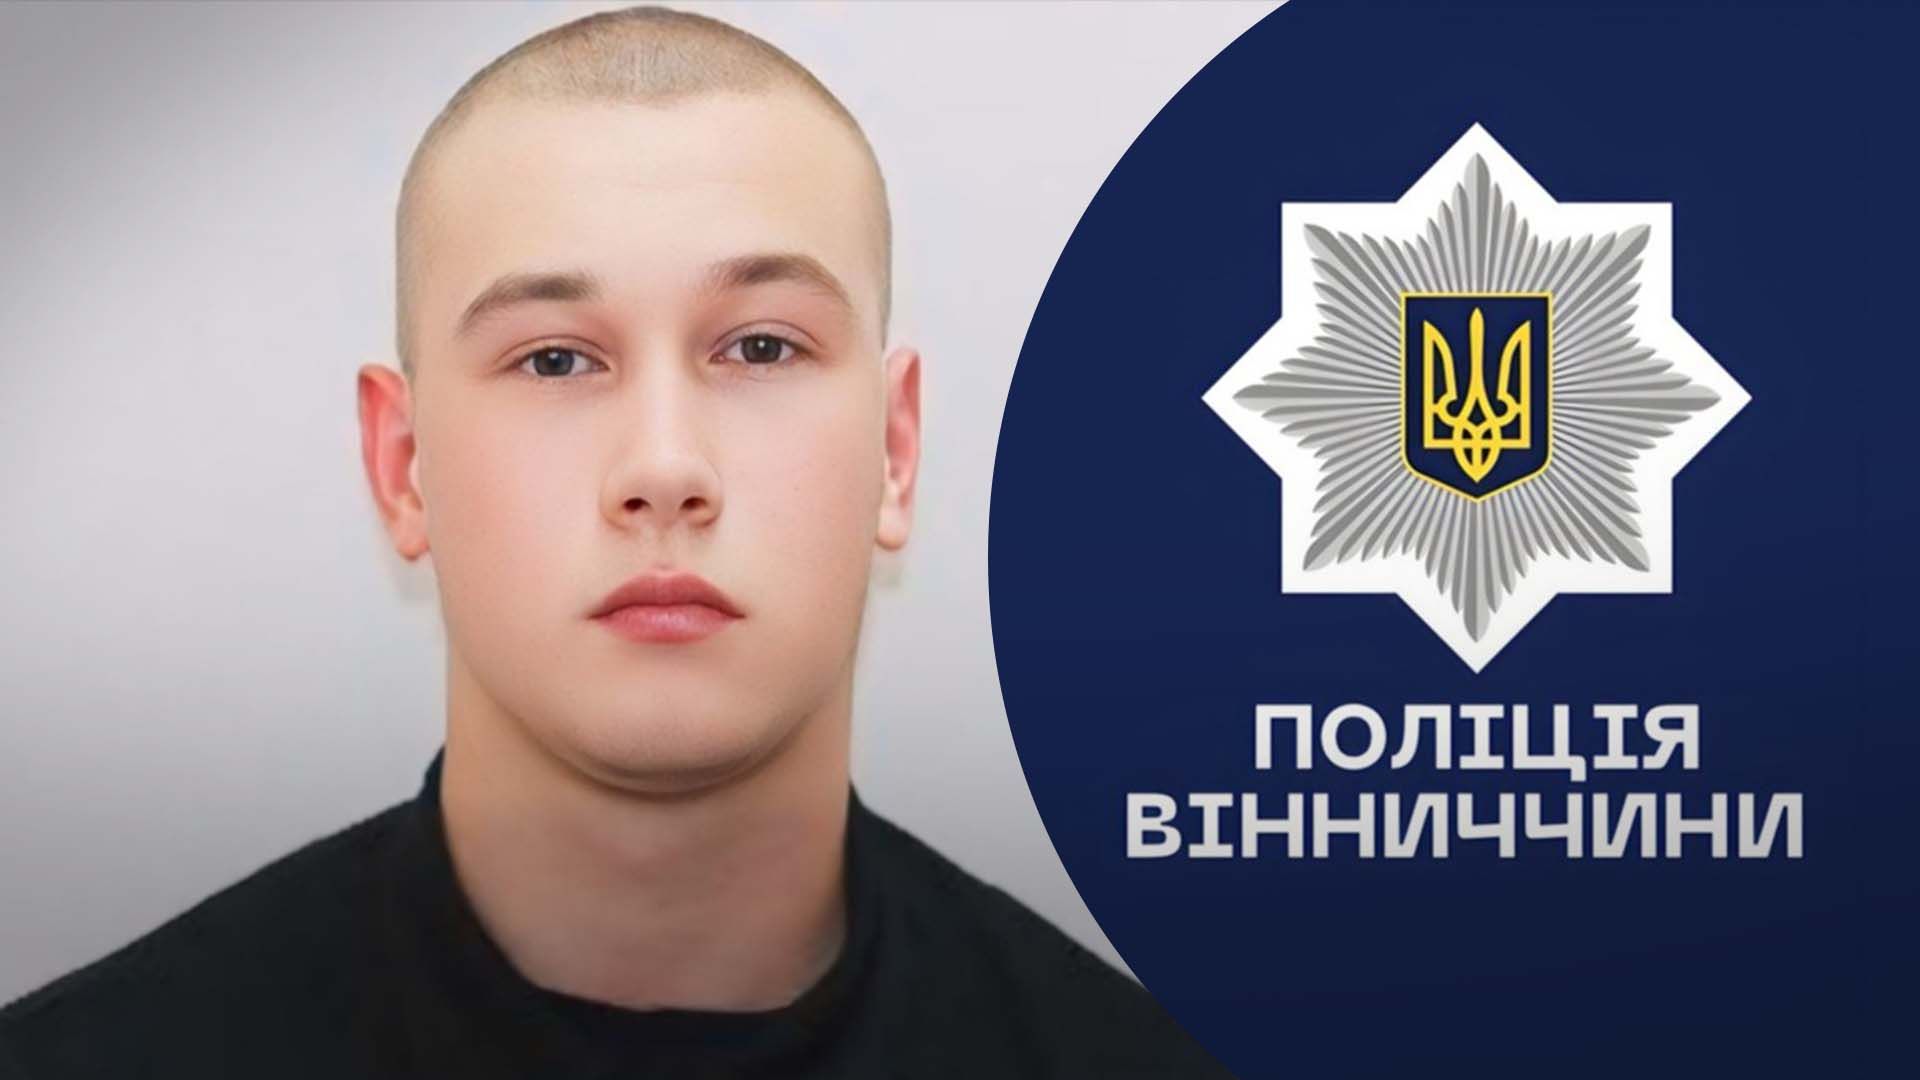 Полицейские Винницкой области посвятили видео погибшему Максиму Зарецкому - 24 Канал